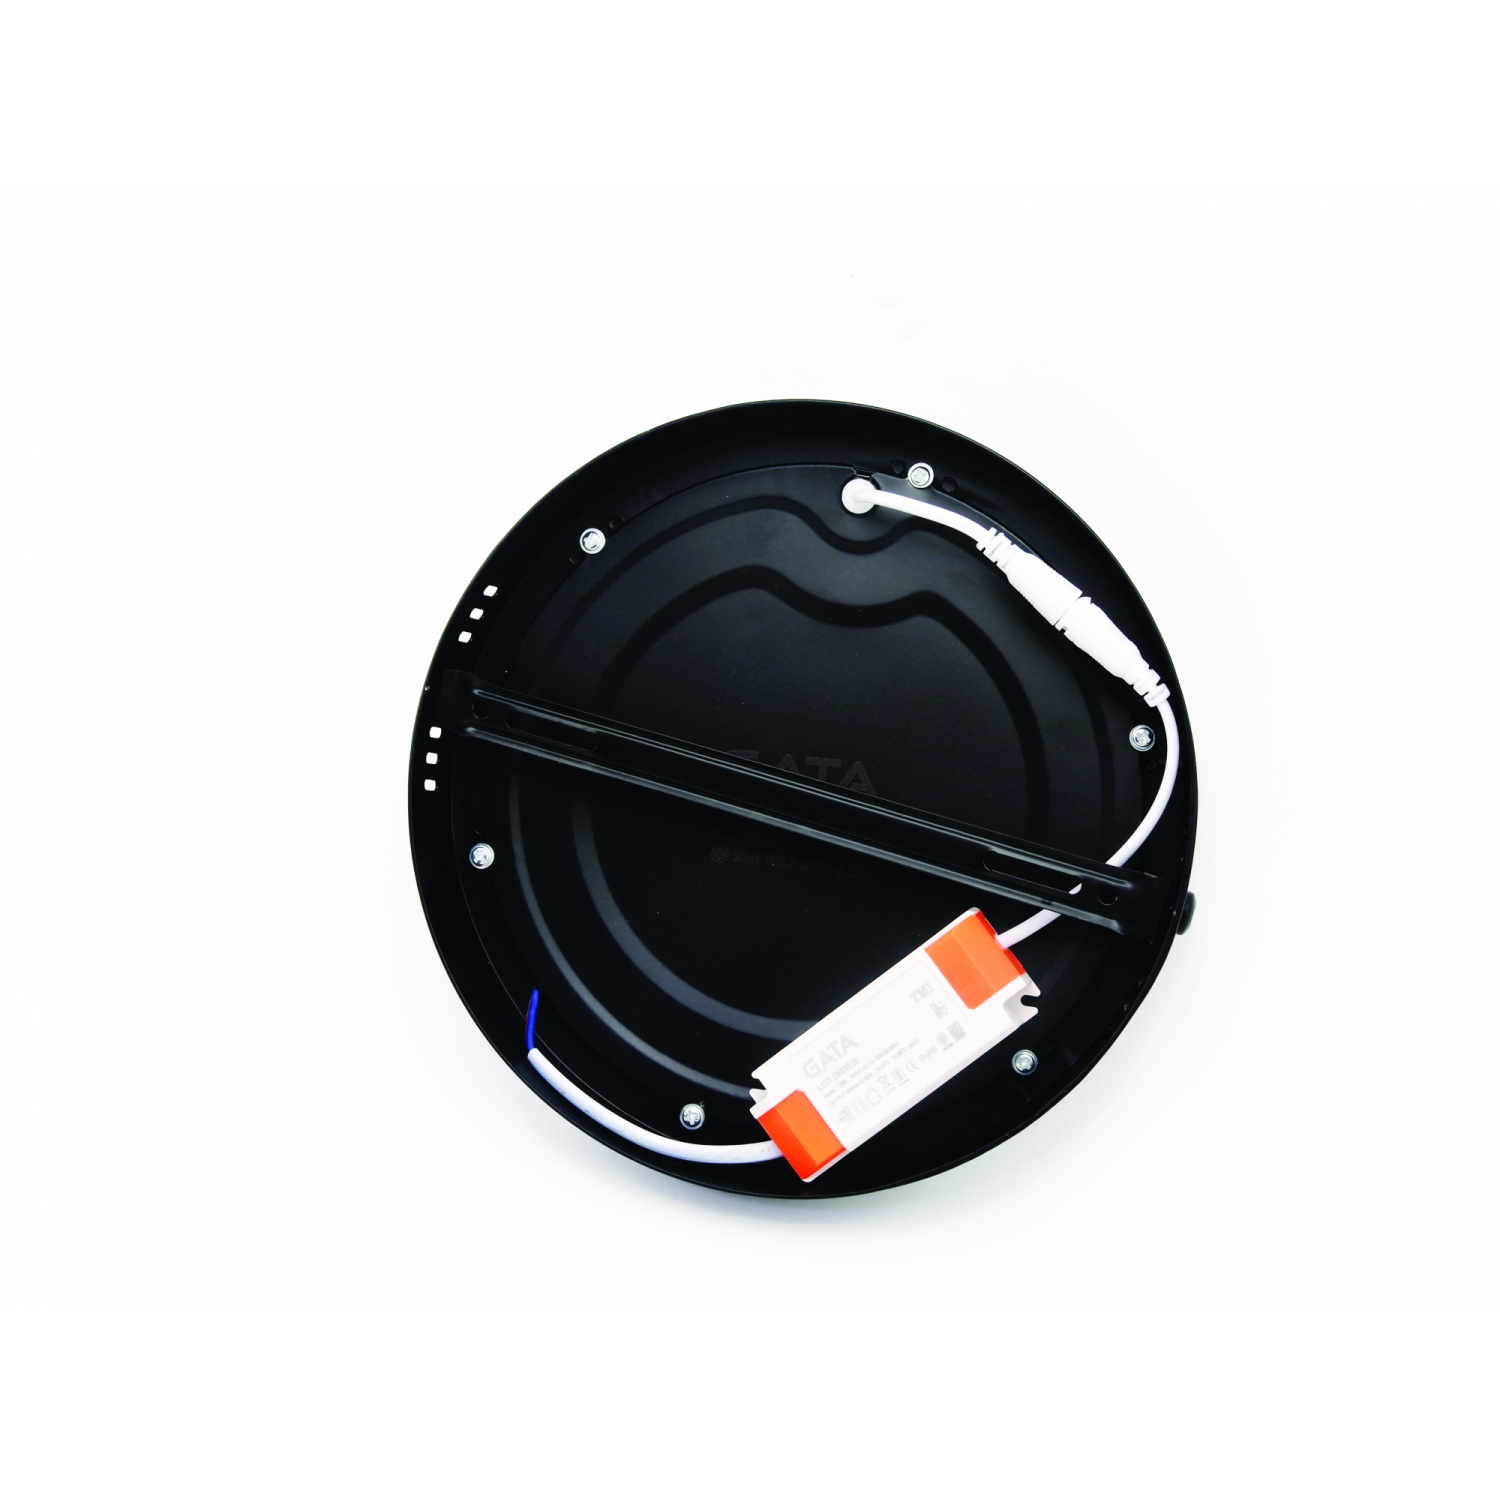 GATA โคมดาวไลท์ LED แบบติดลอยหน้ากลม ขอบสีดำ 8นิ้ว 18W แสงเดย์ไลท์ สีดำ